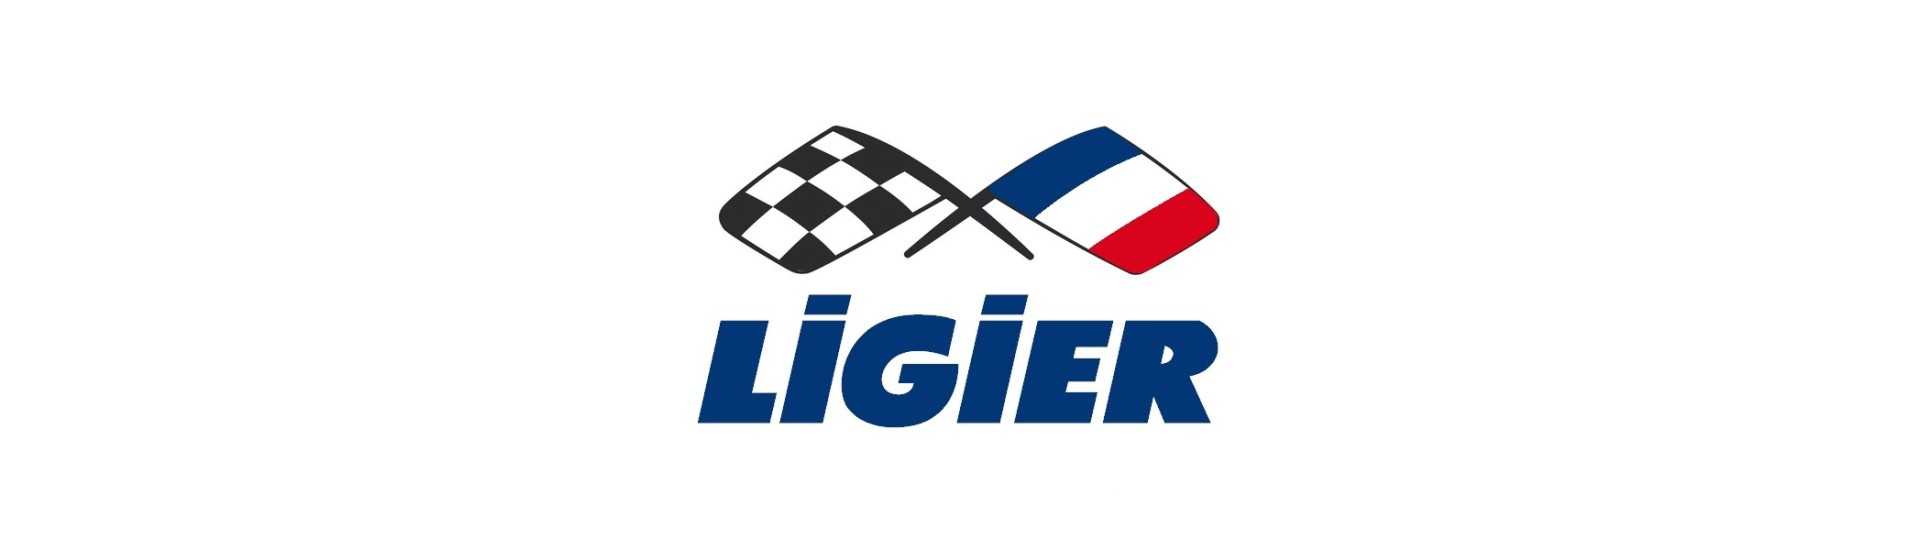 Tappo serbatoio al miglior prezzo per auto senza permesso Ligier